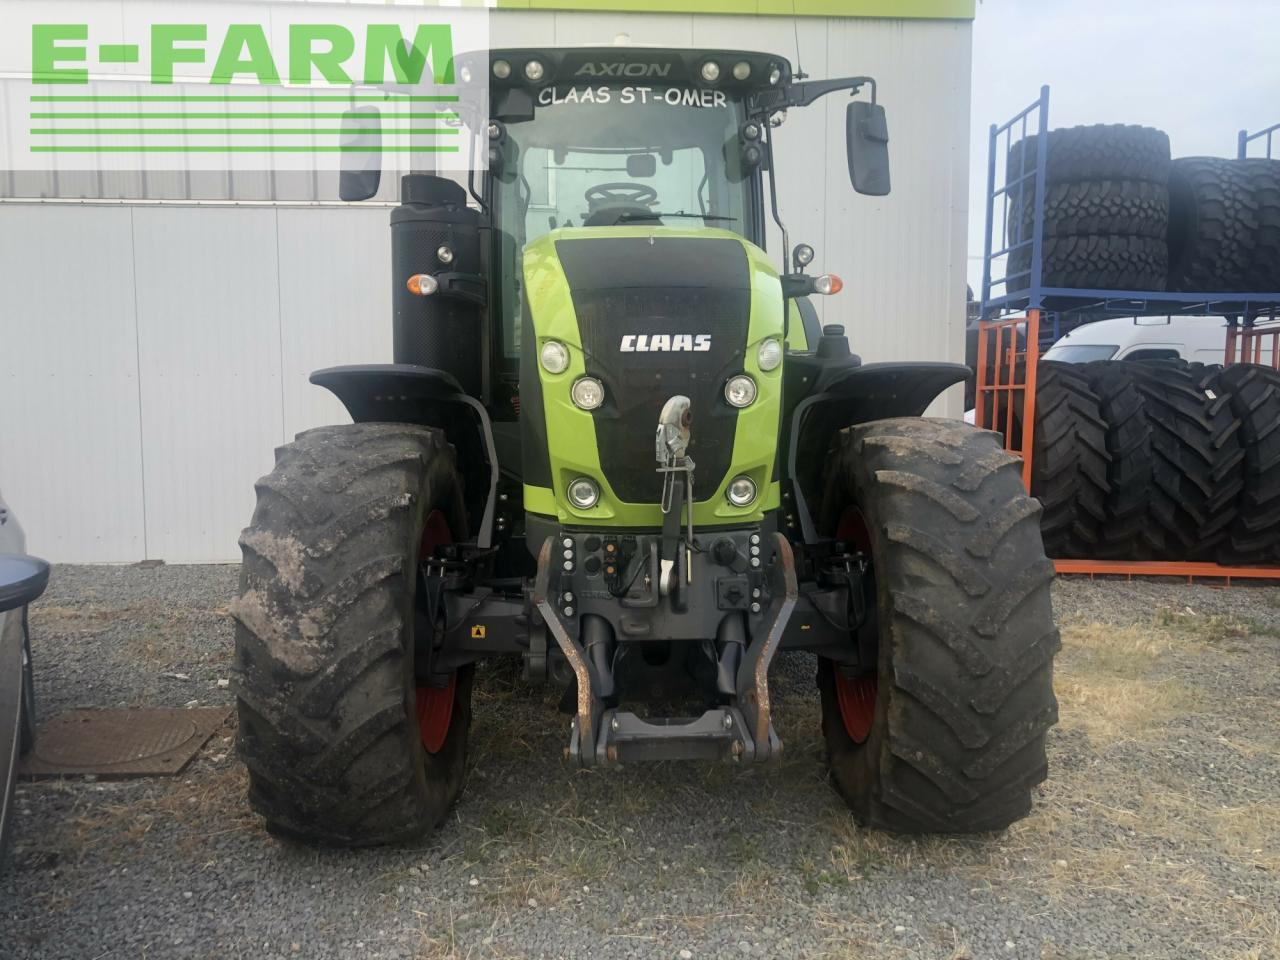 Farm tractor CLAAS axion 920 cmatic